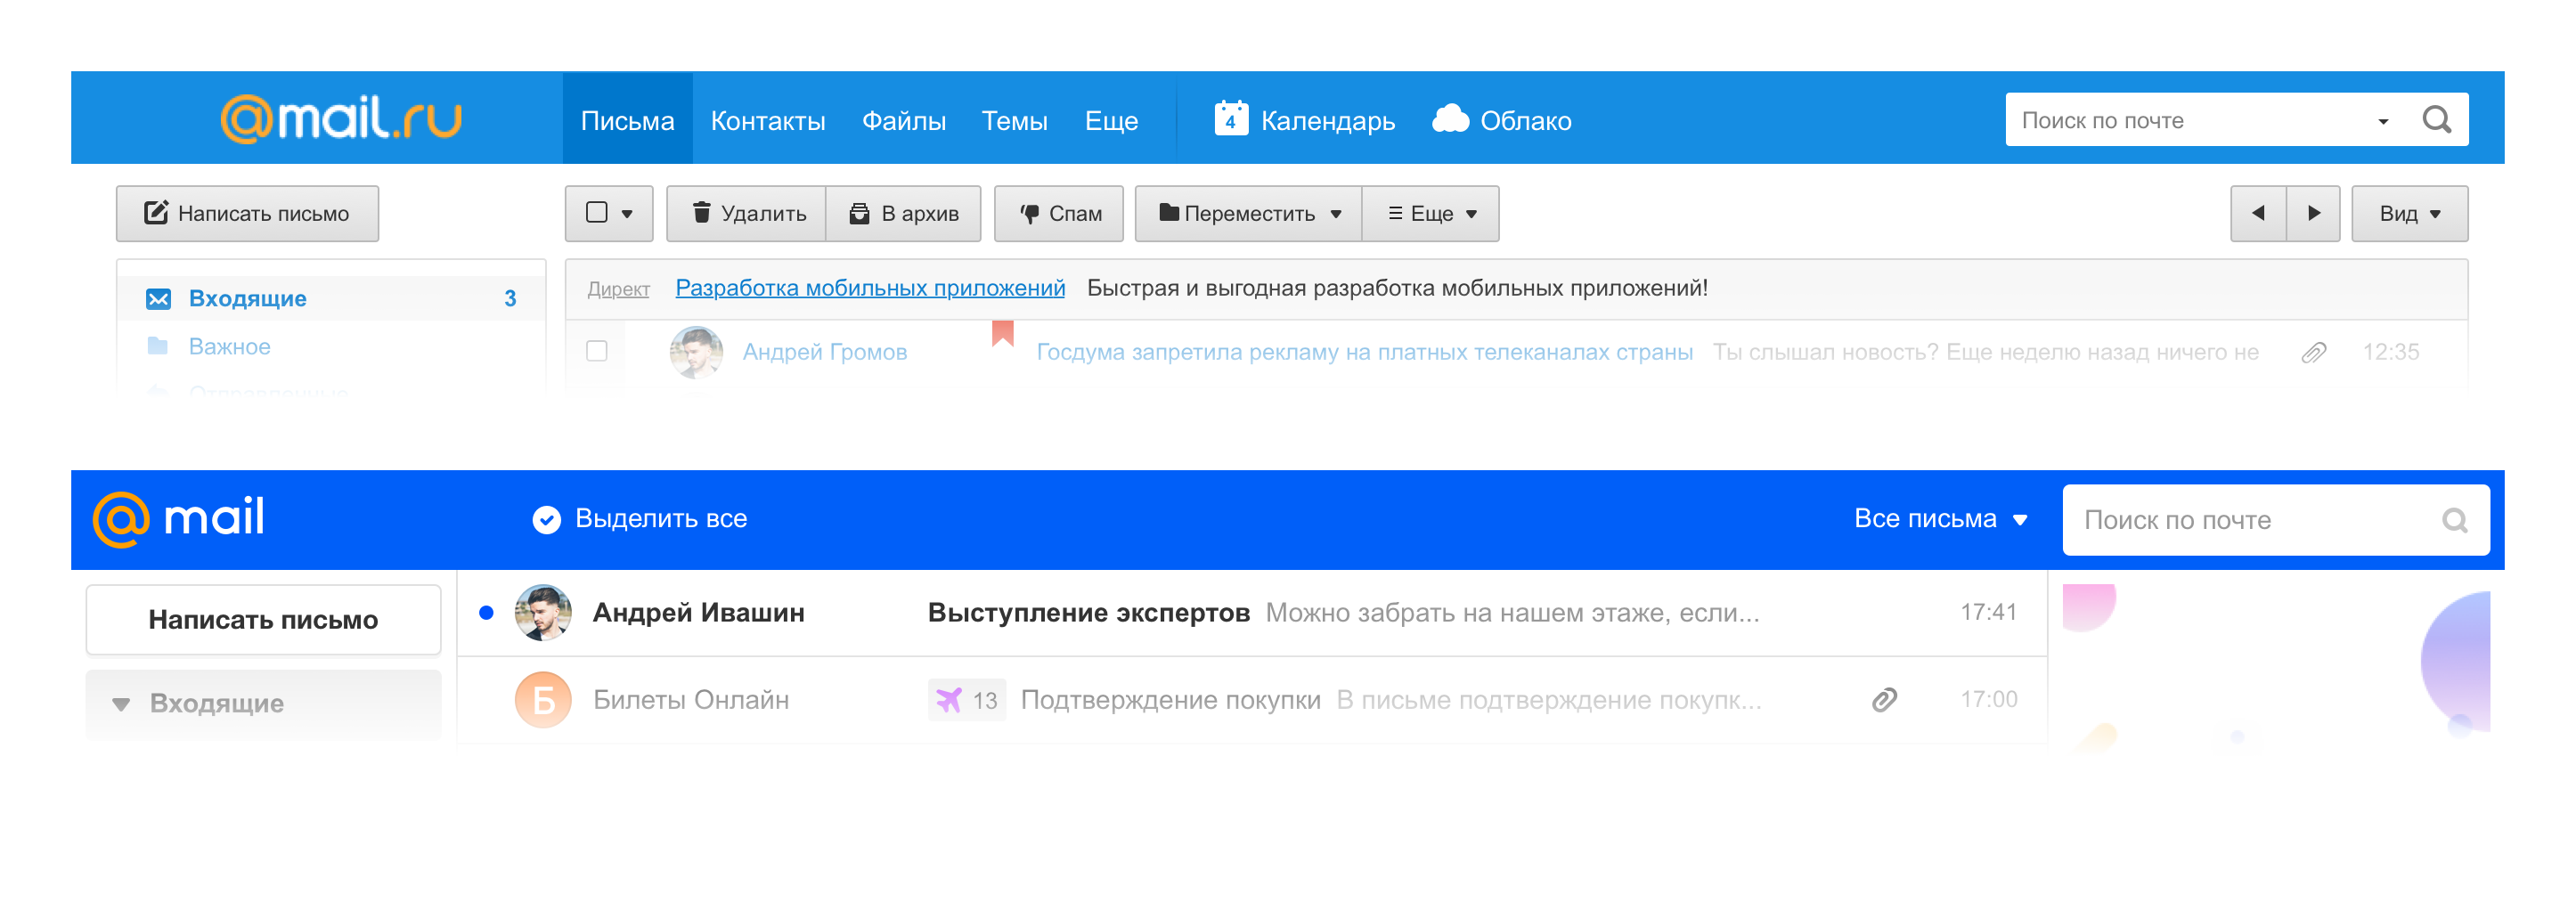 Новая Почта Mail.ru и при чем тут осьминог - 25